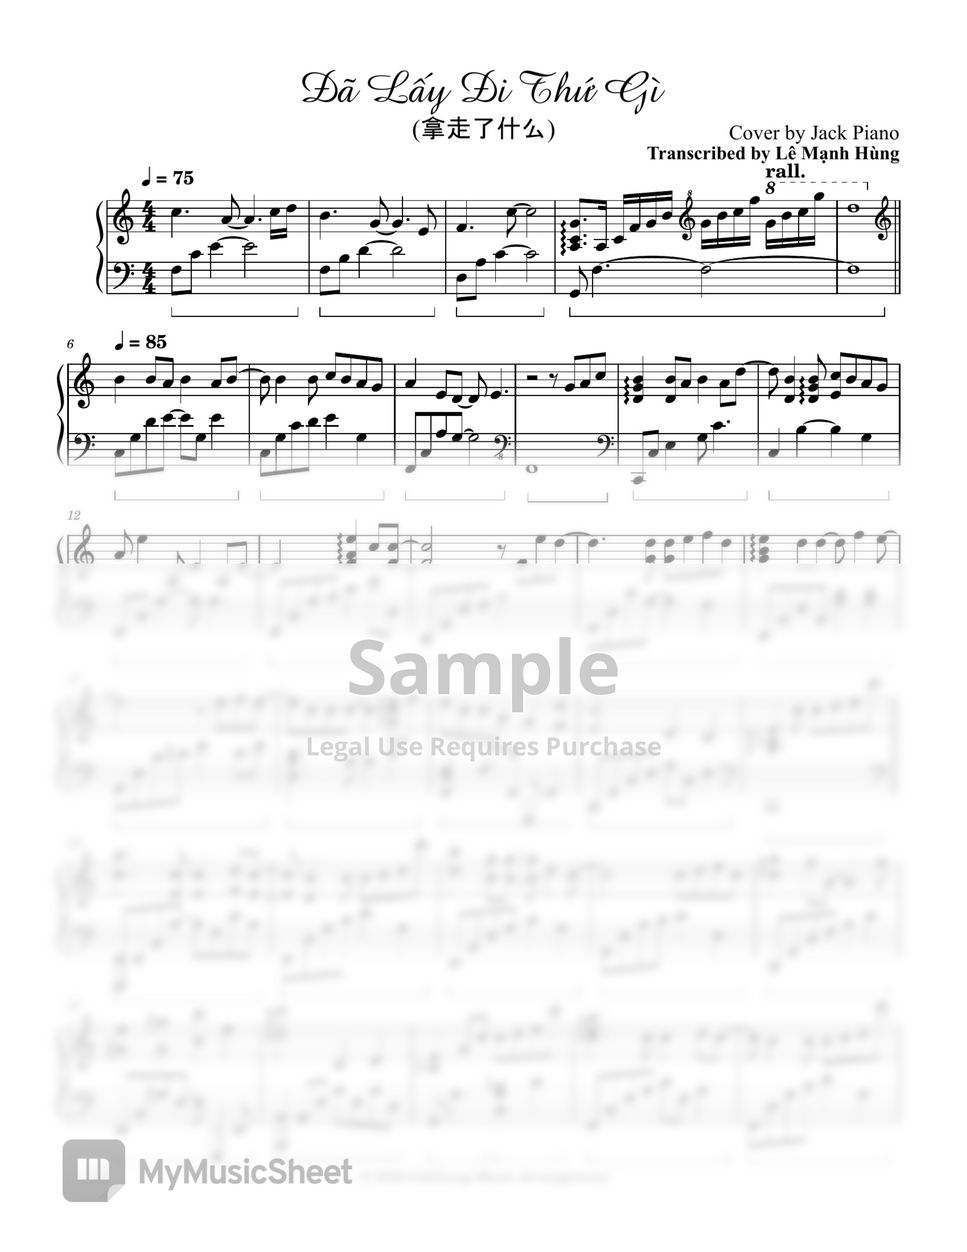 Jack Piano - Đã Lấy Đi Thứ Gì (拿走了什么) (Transcribed) Sheets by Le Manh Hung